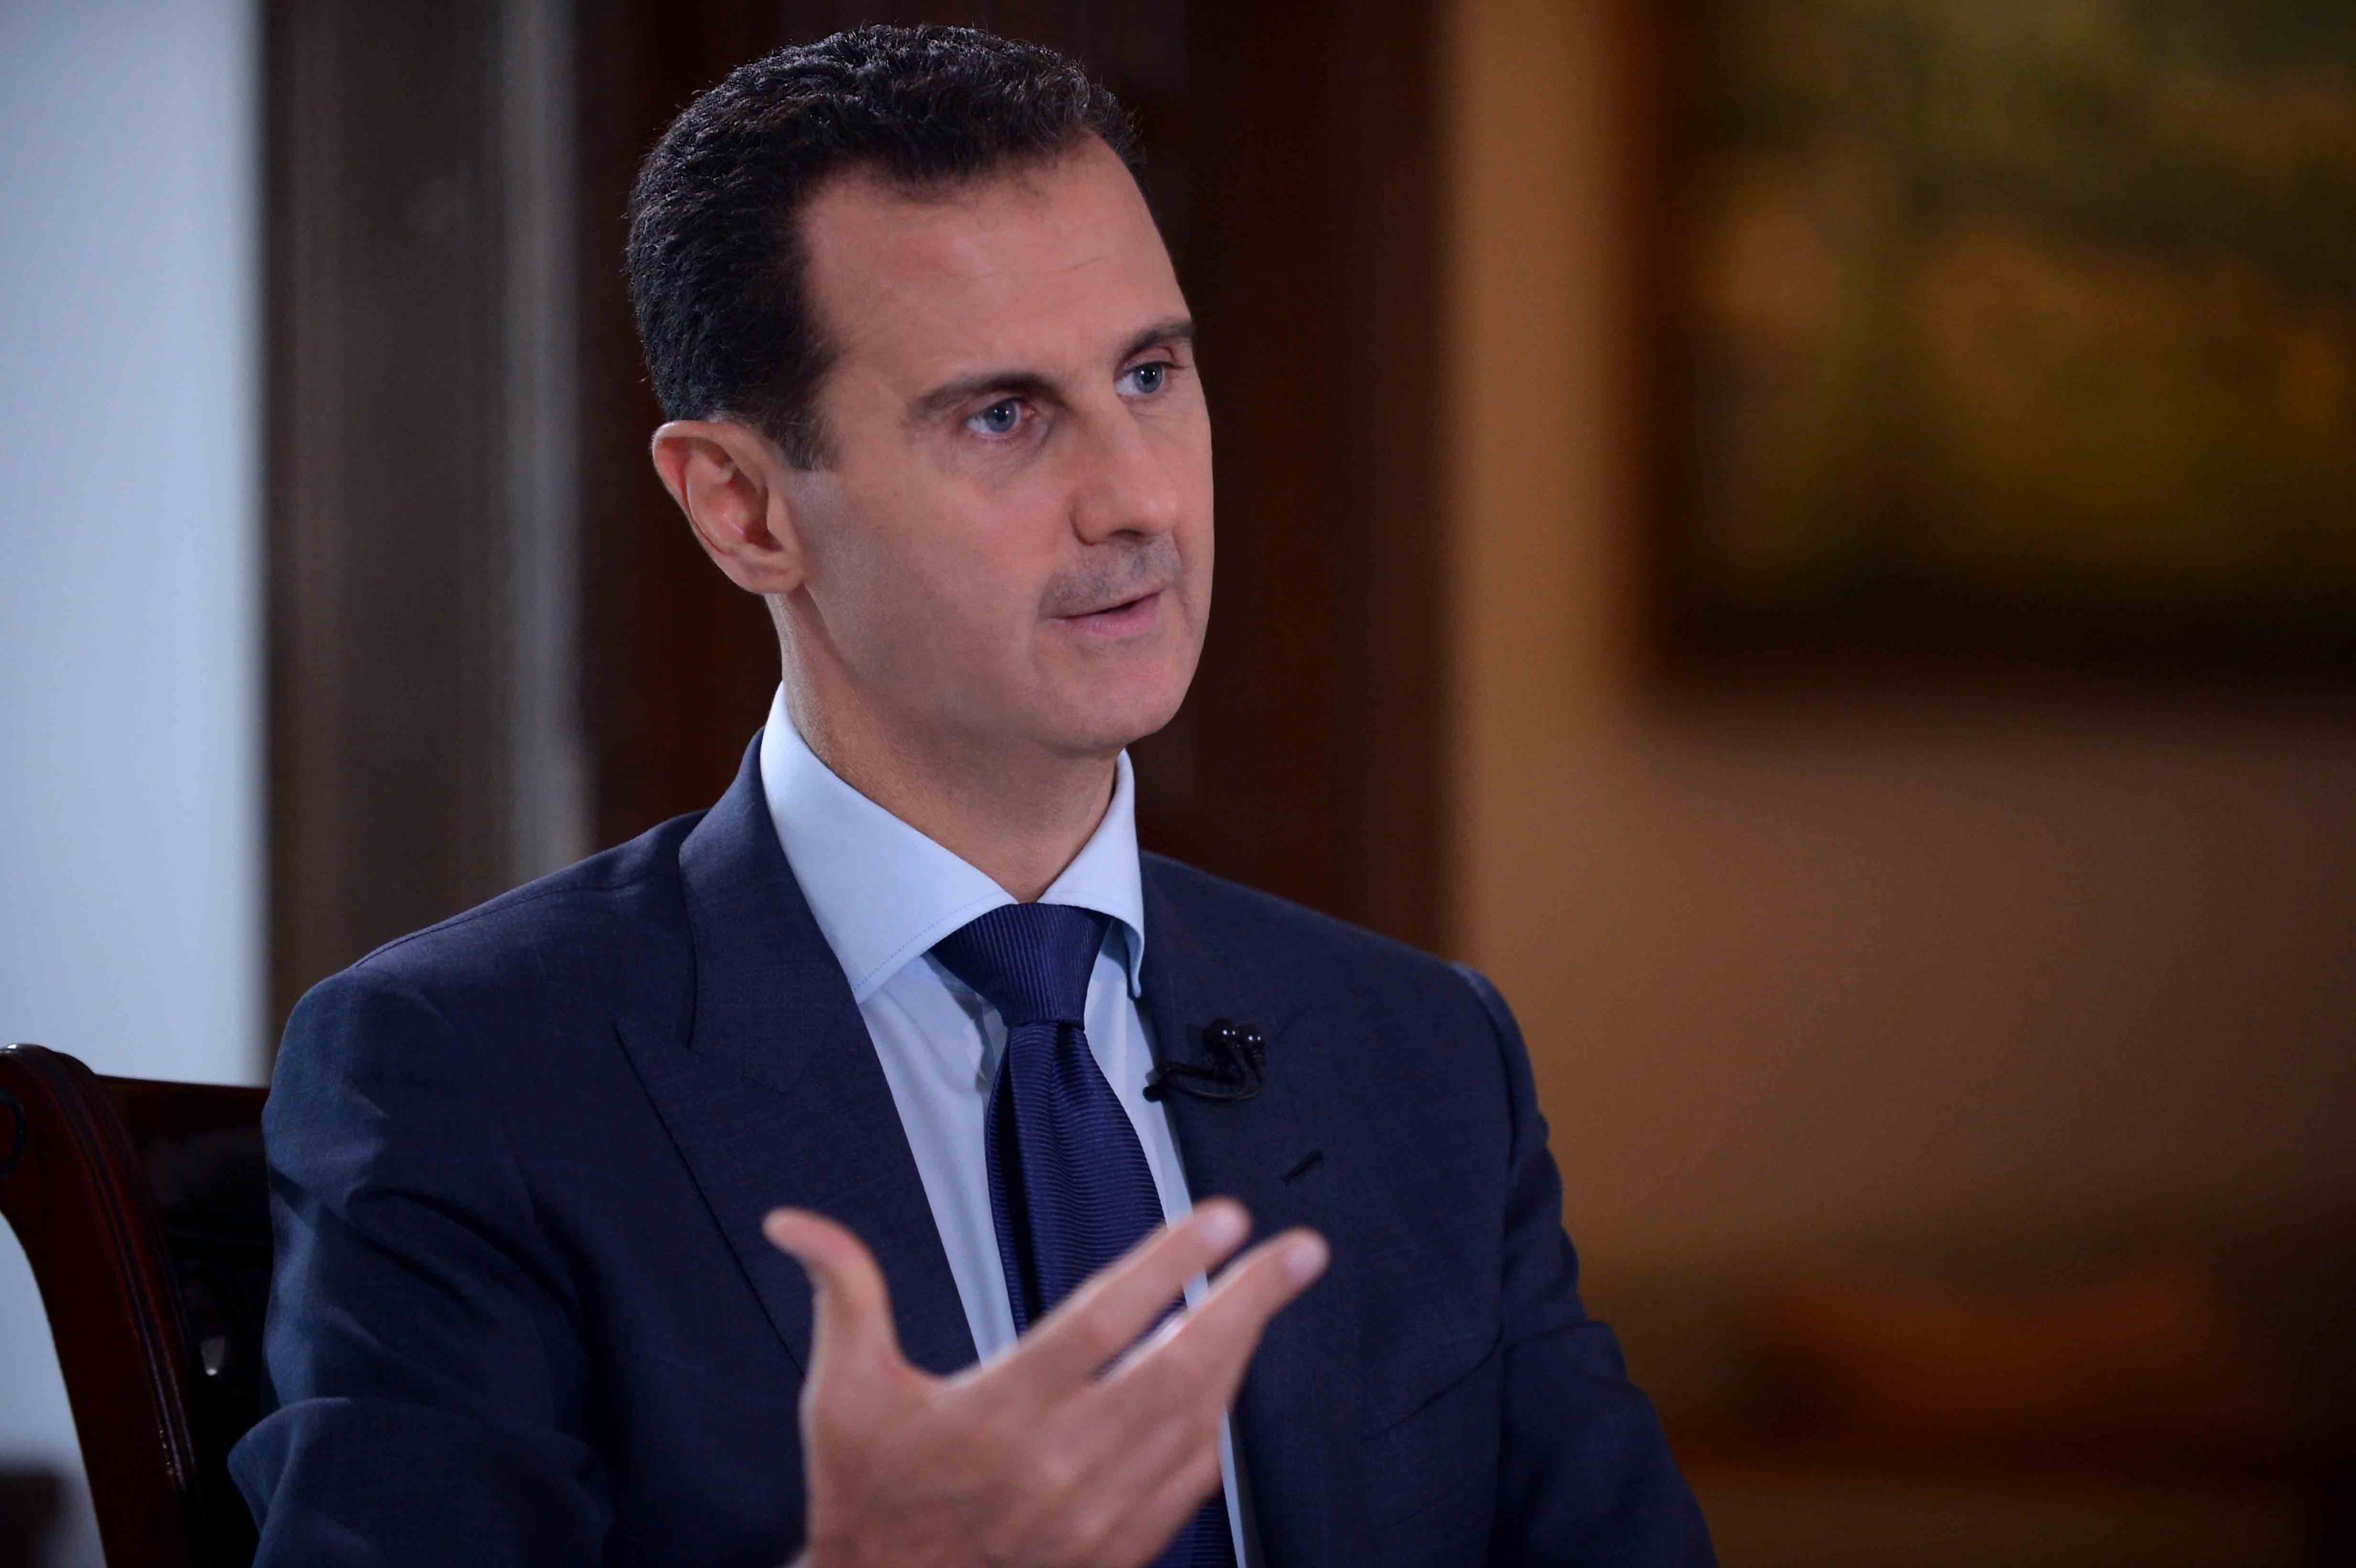 الرئيس الأسد: سنستعيد كل الاراضي السورية والغرب يدفع ثمن دعمه لمن ظنهم "معارضة معتدلة"